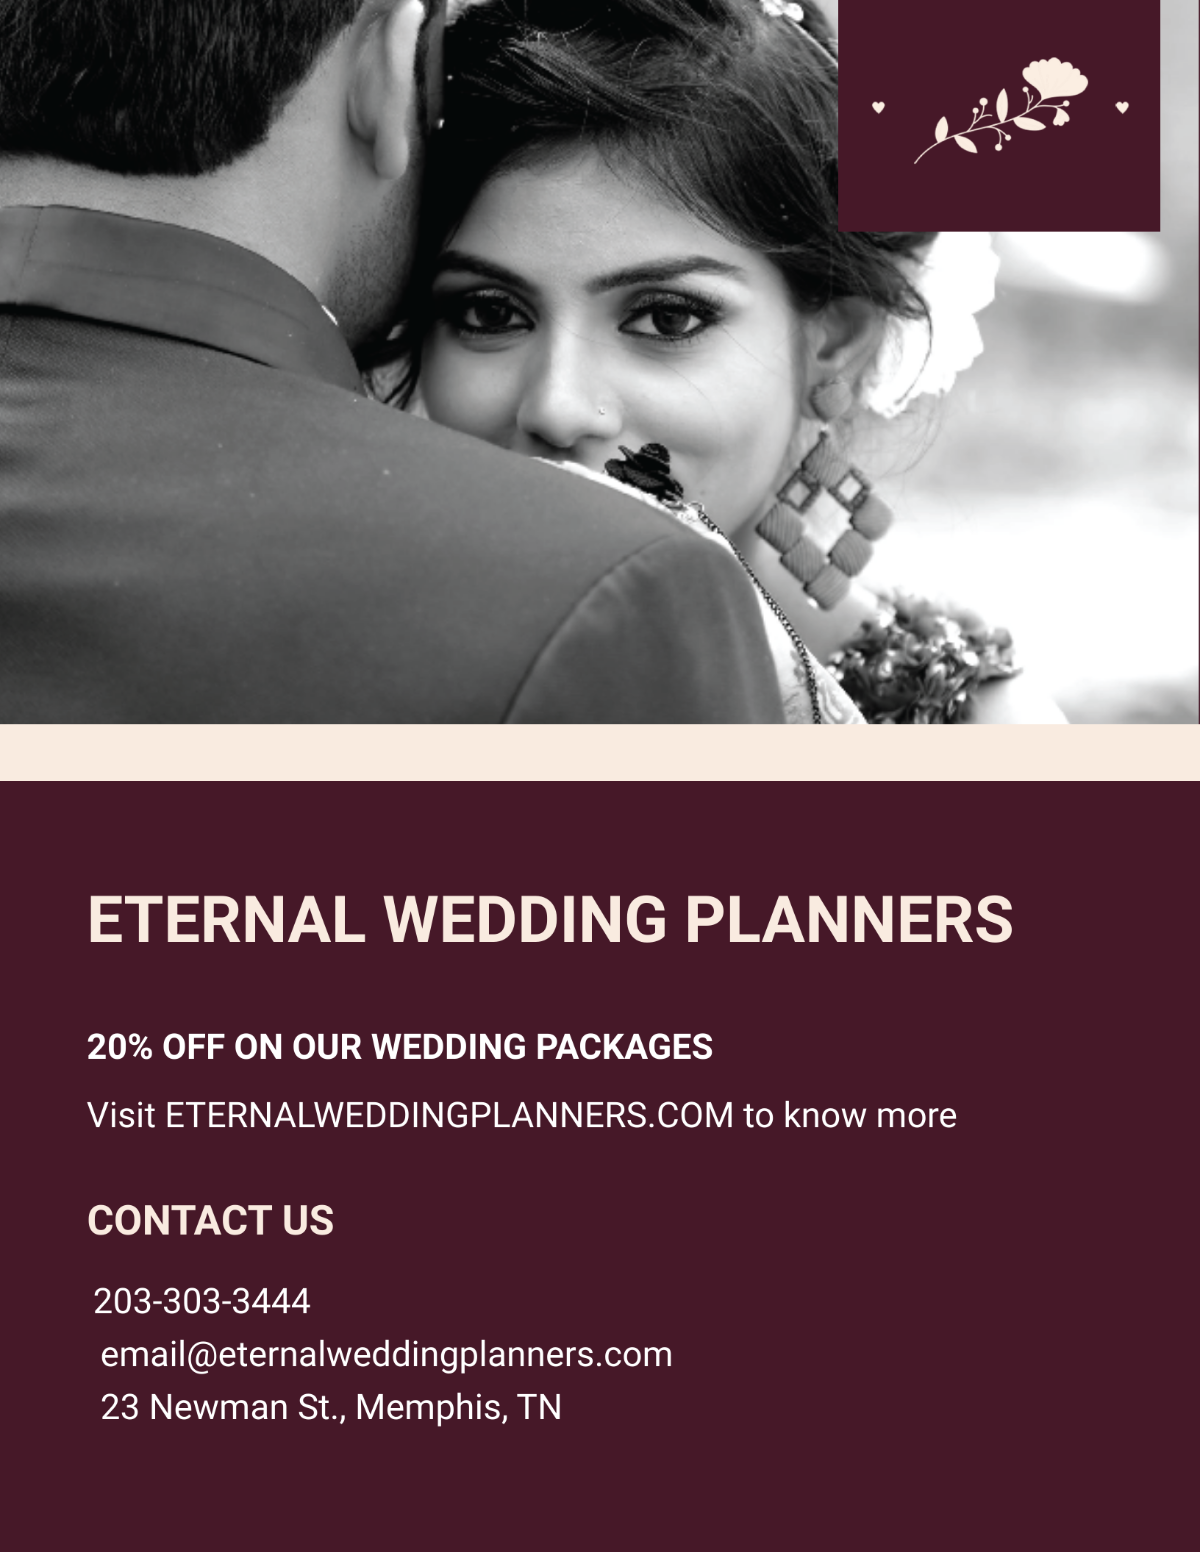 Wedding Planner Marketing Flyer